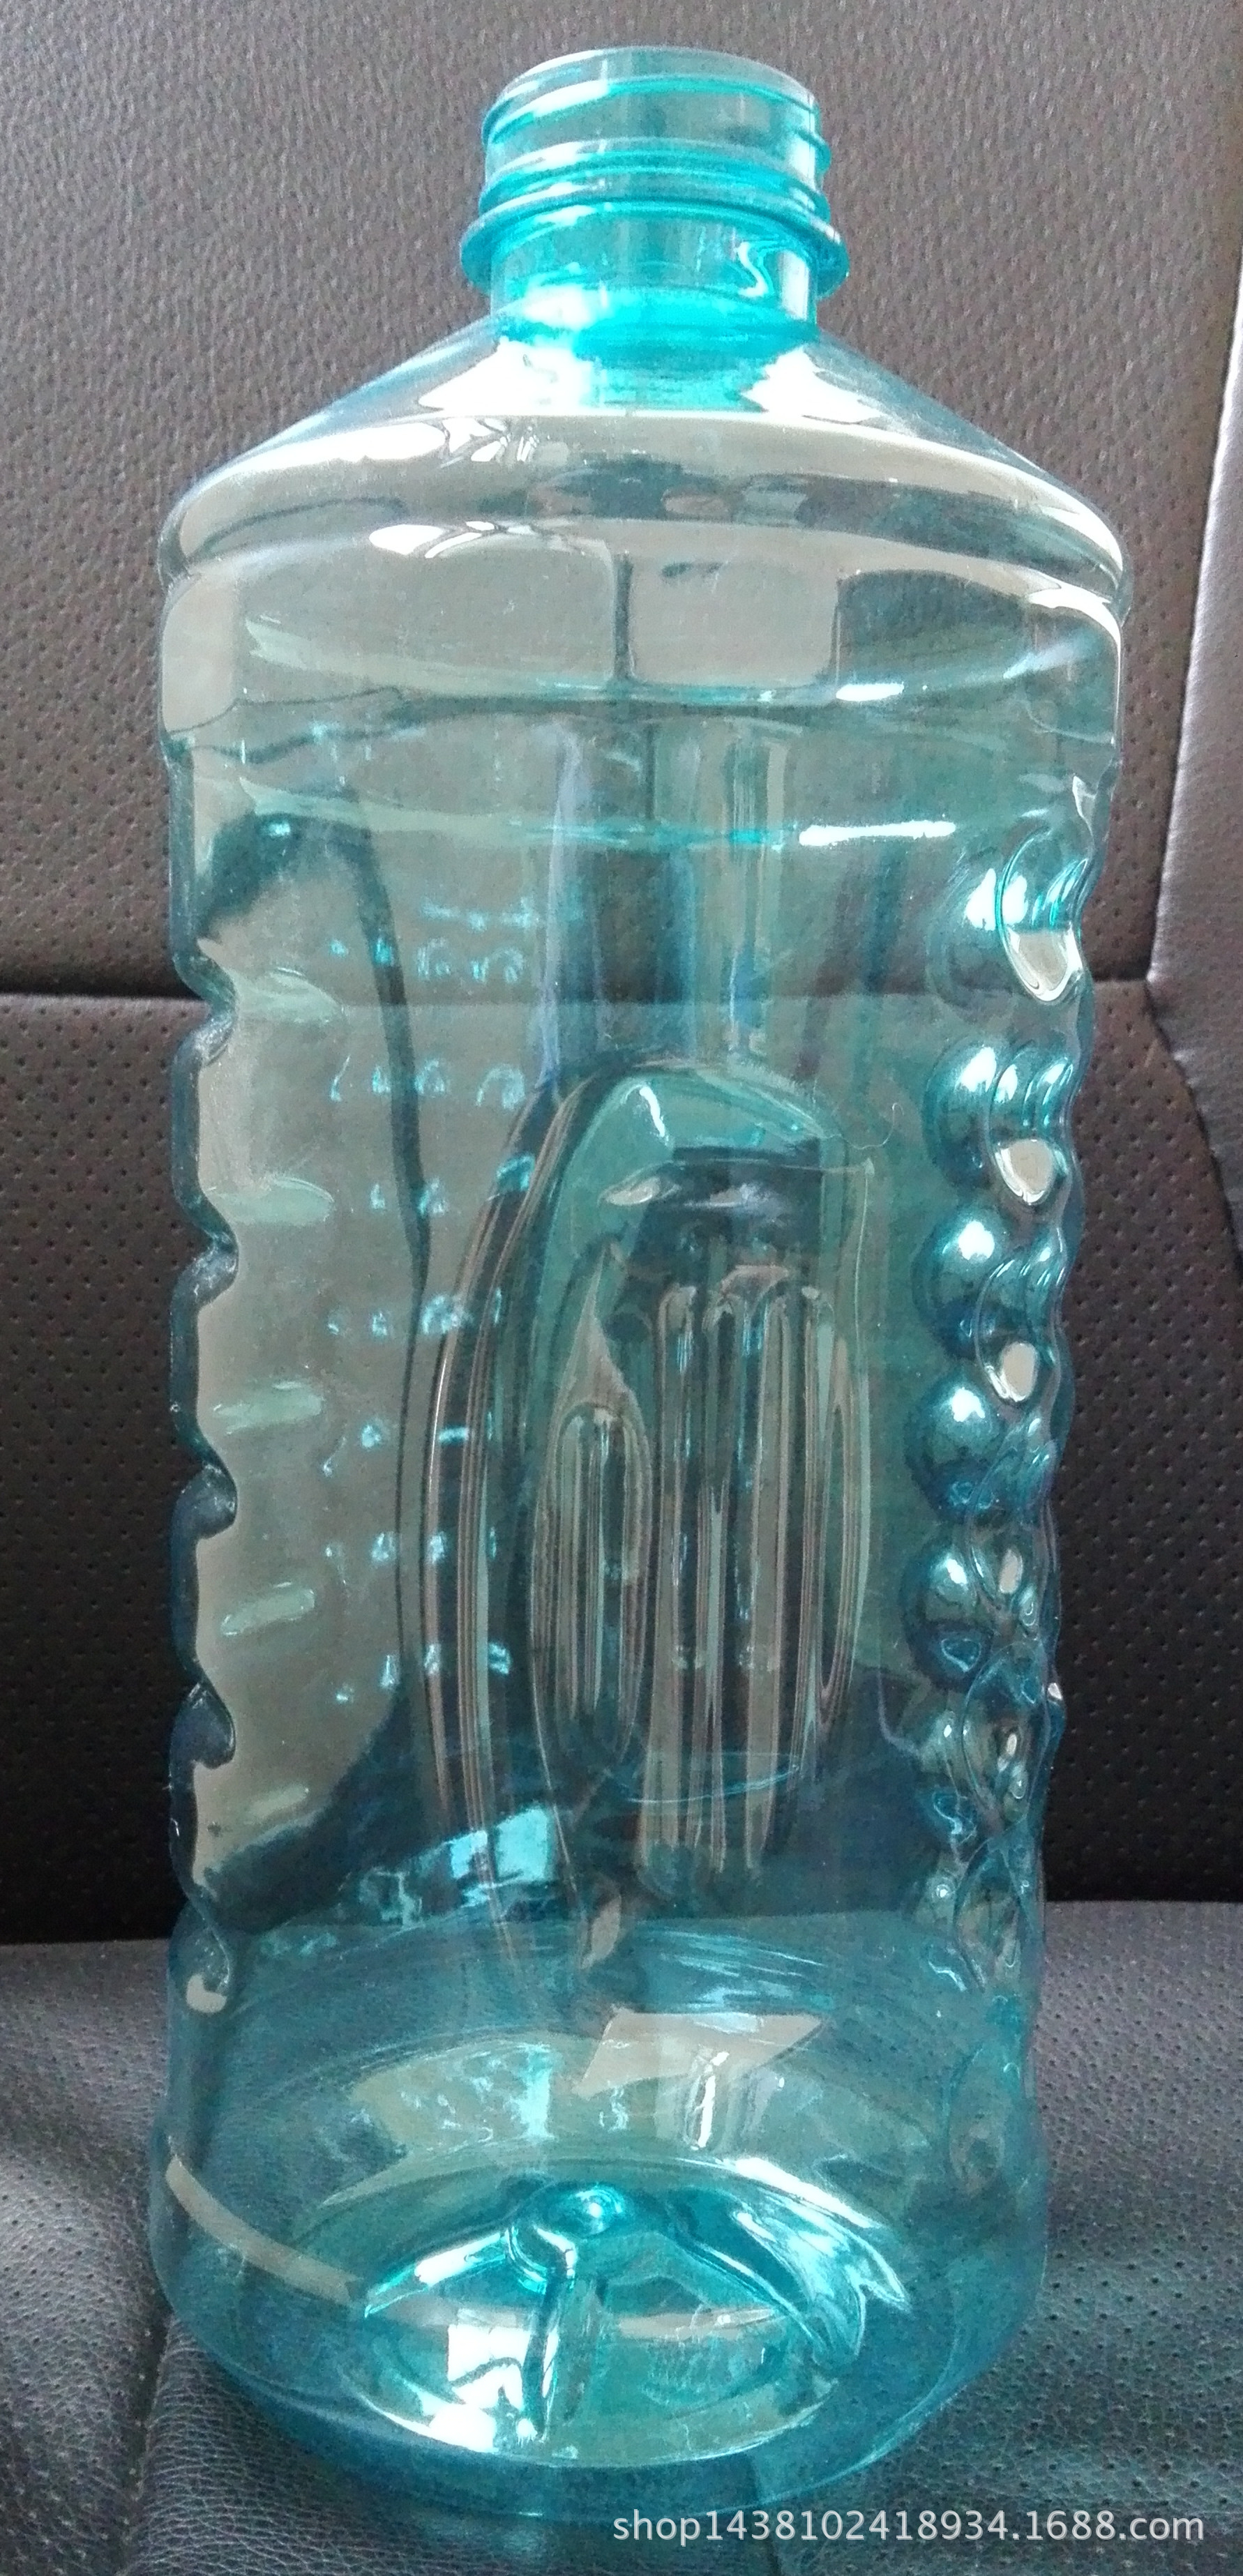 2l汽车玻璃水瓶,透明塑料瓶,pet塑料瓶,1.8l